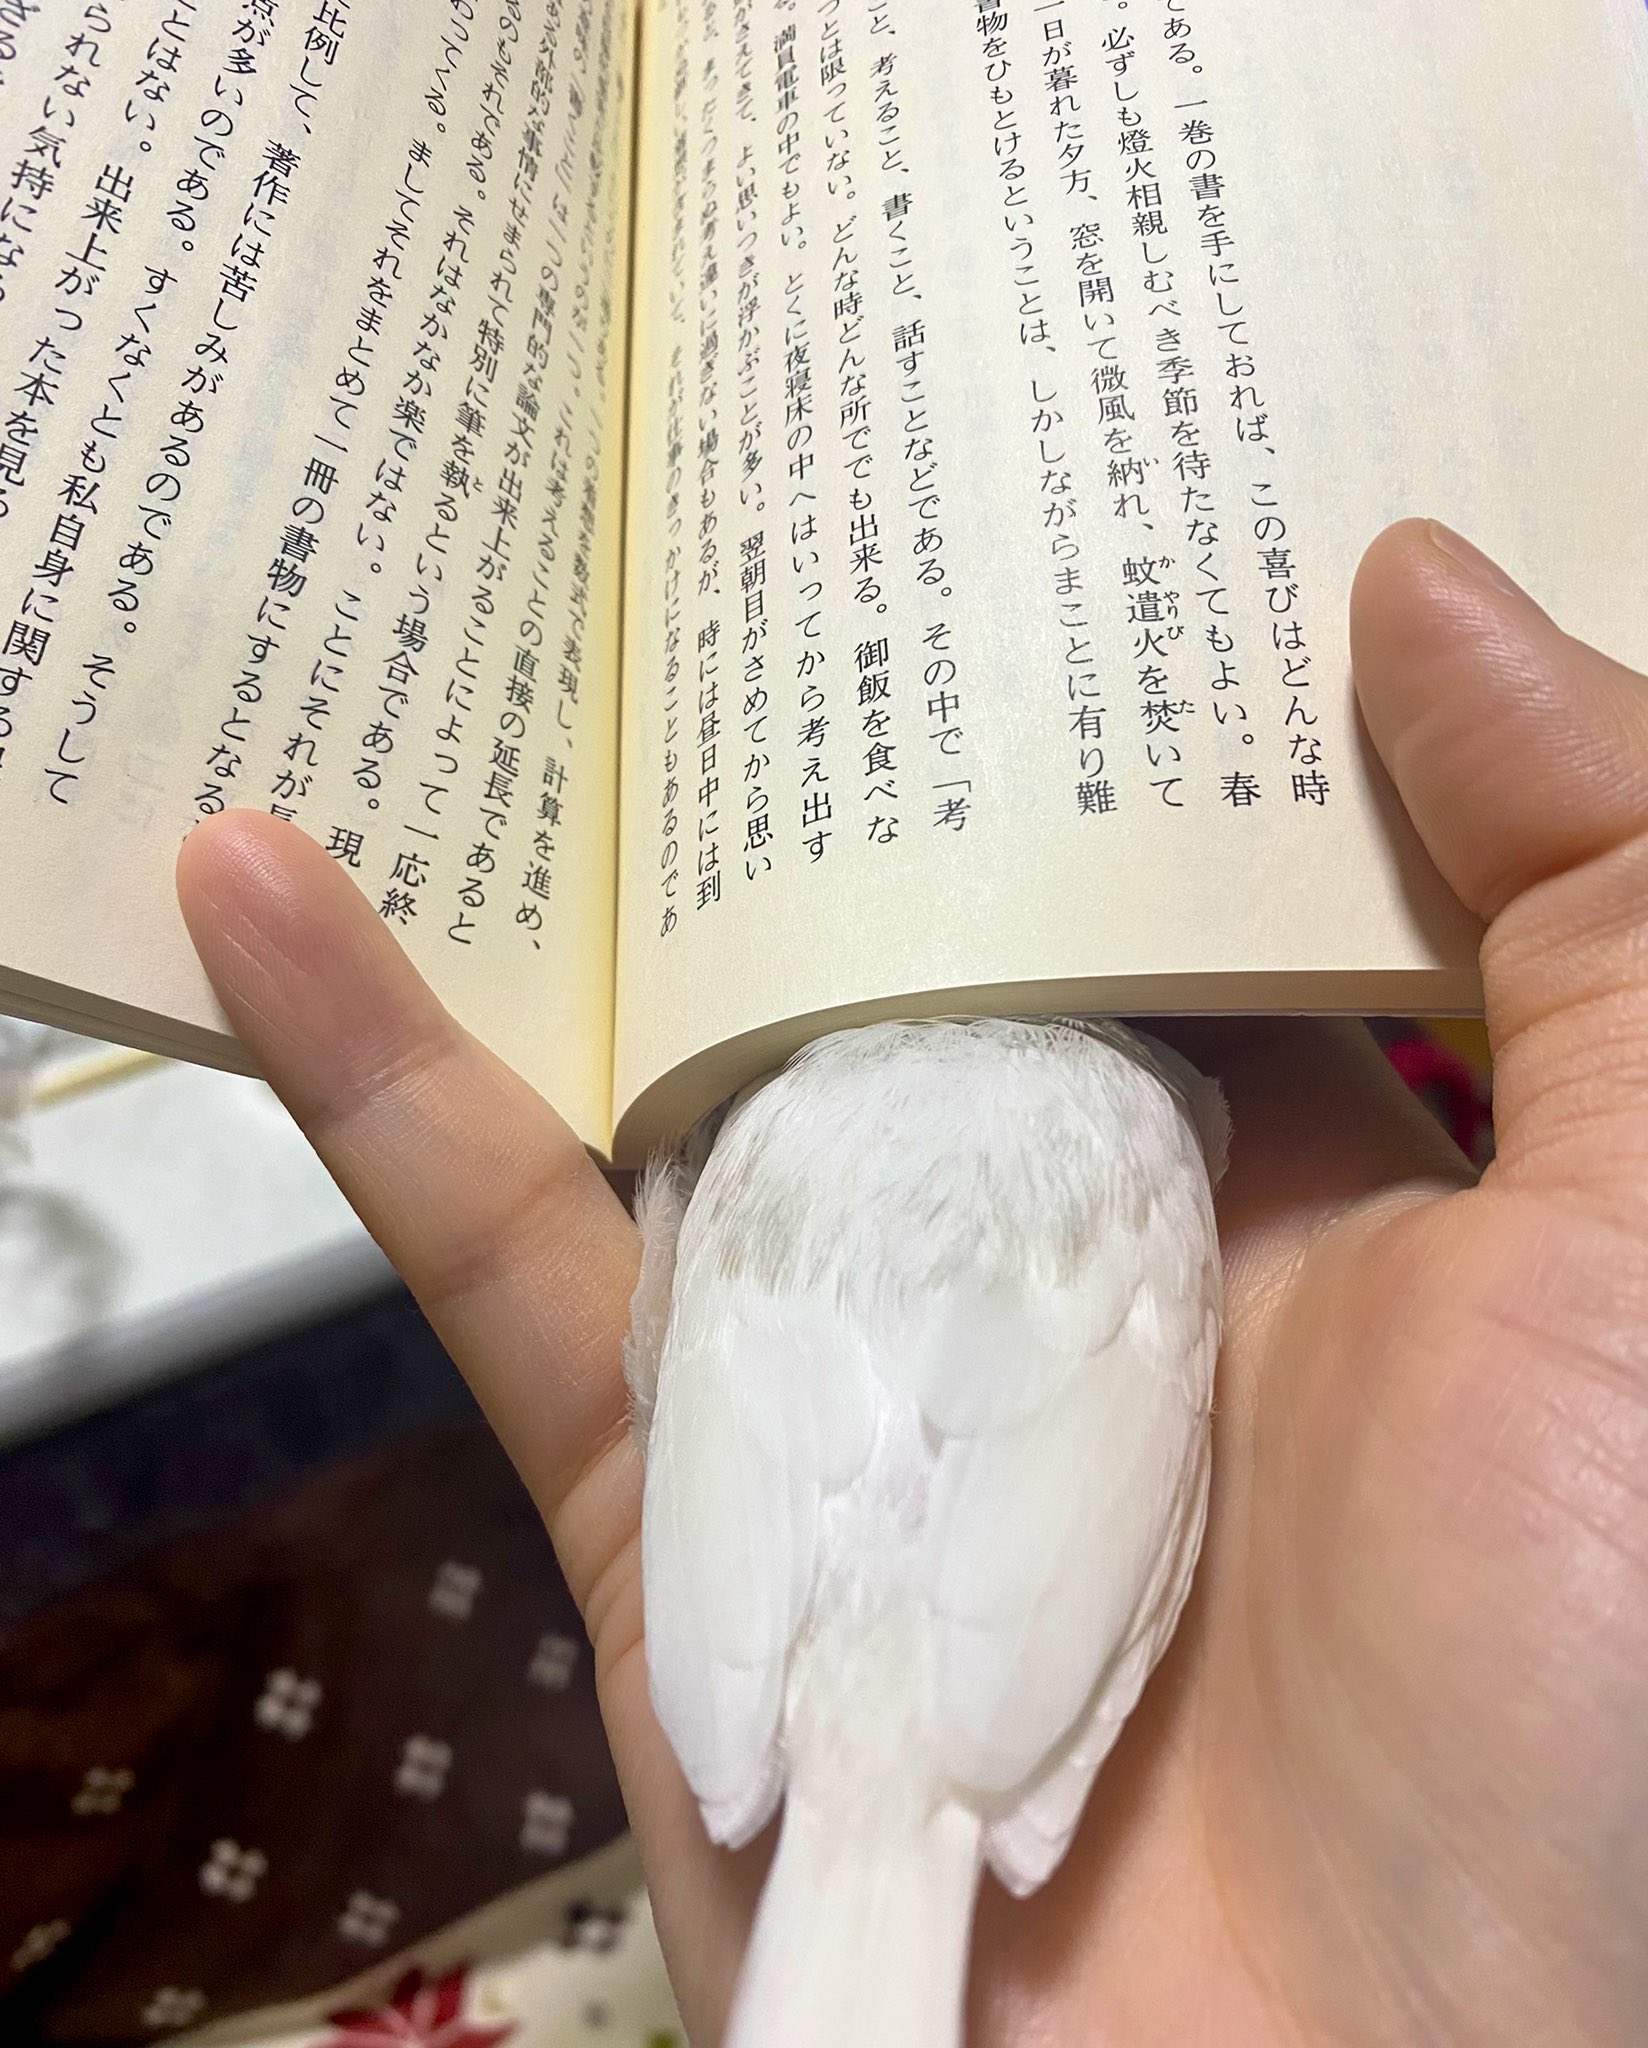 クリスティーヌ ヨーコ 白文鳥 を 探してます 背中に灰色の毛が少しあります 東京都 五反田 にて22年４月13日 水 に 文鳥 を 迷子 にしました 拡散 いただけると幸いです T Co Gn6kfuuhws Twitter